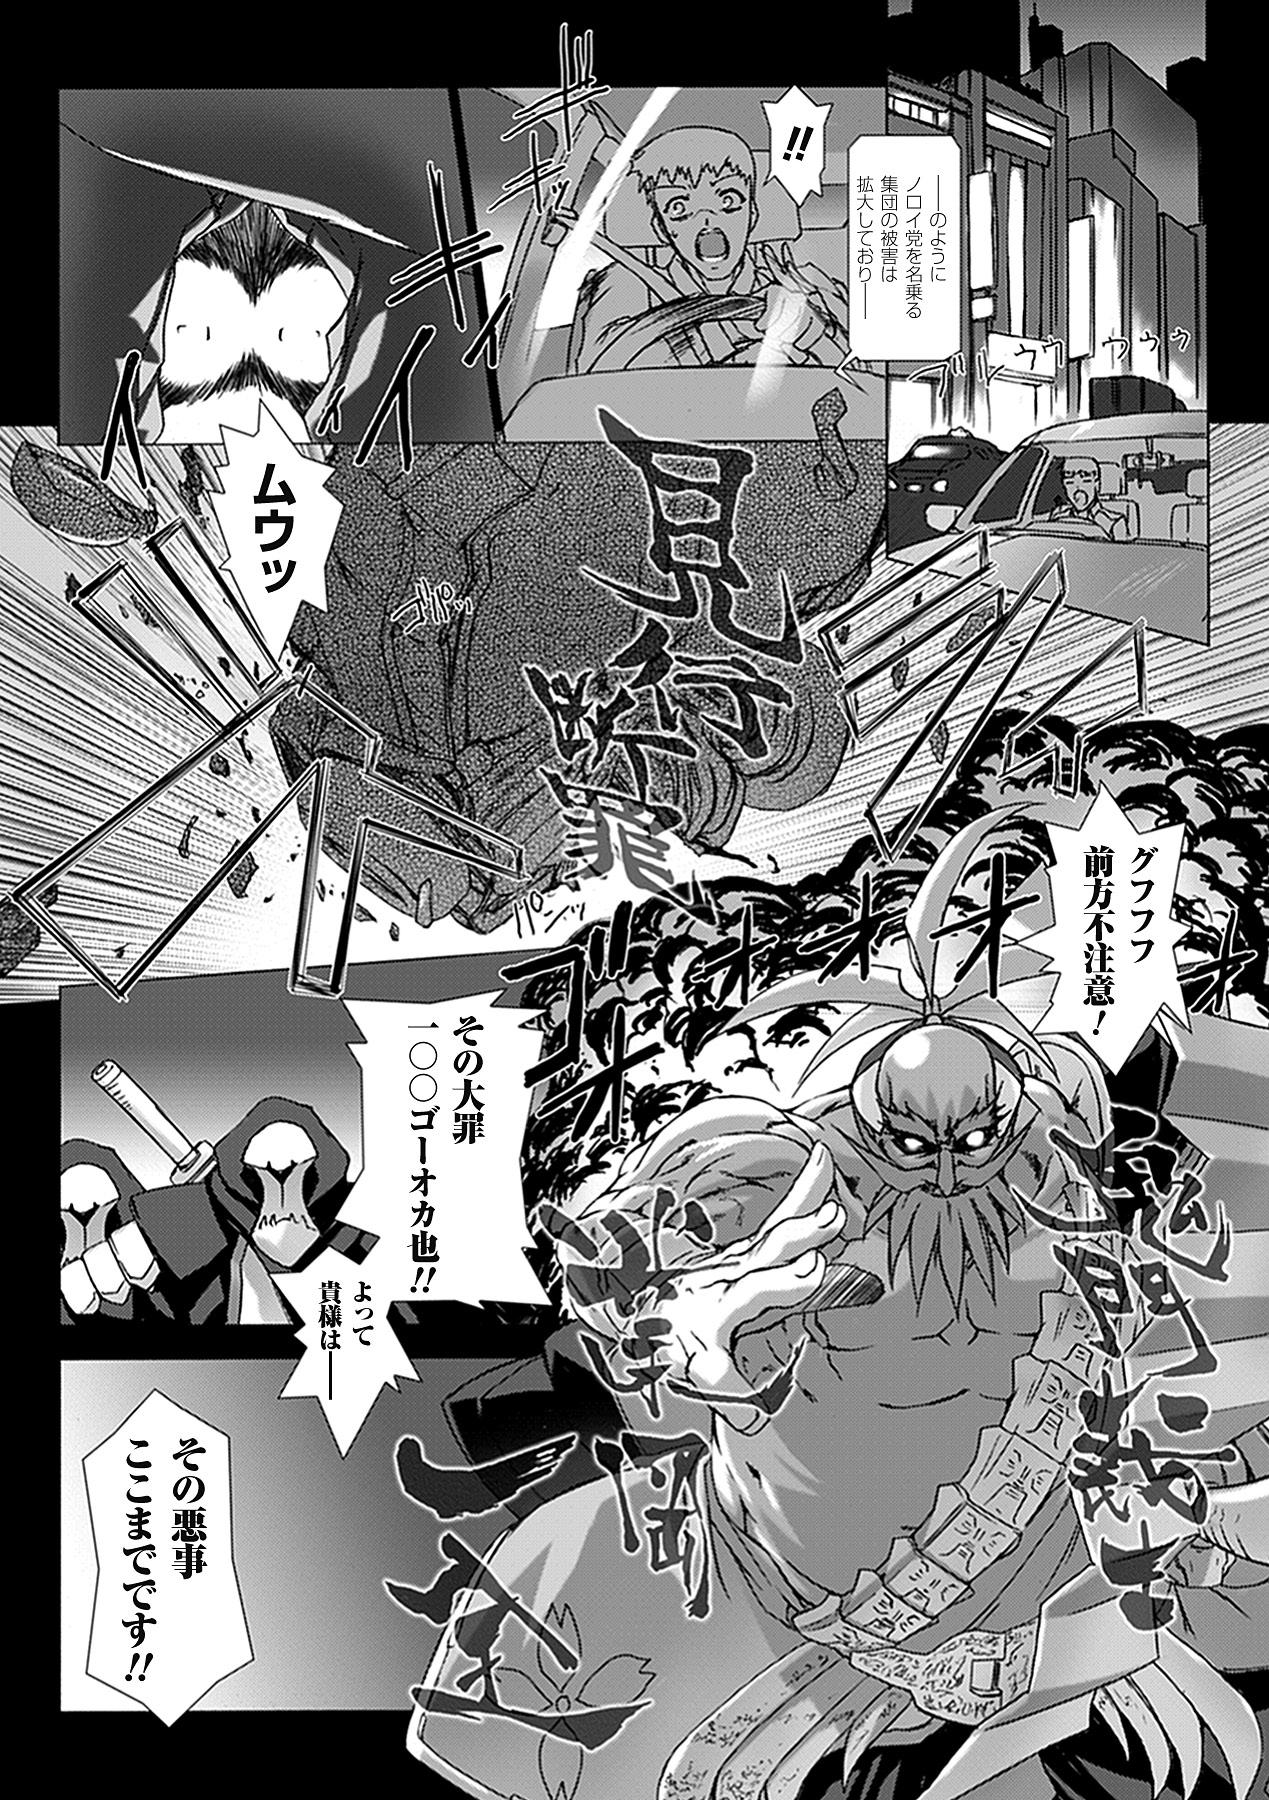 Cowgirl Choukou Sennin Haruka: Yaiba no Maki - Beat blades haruka Masturbando - Page 11